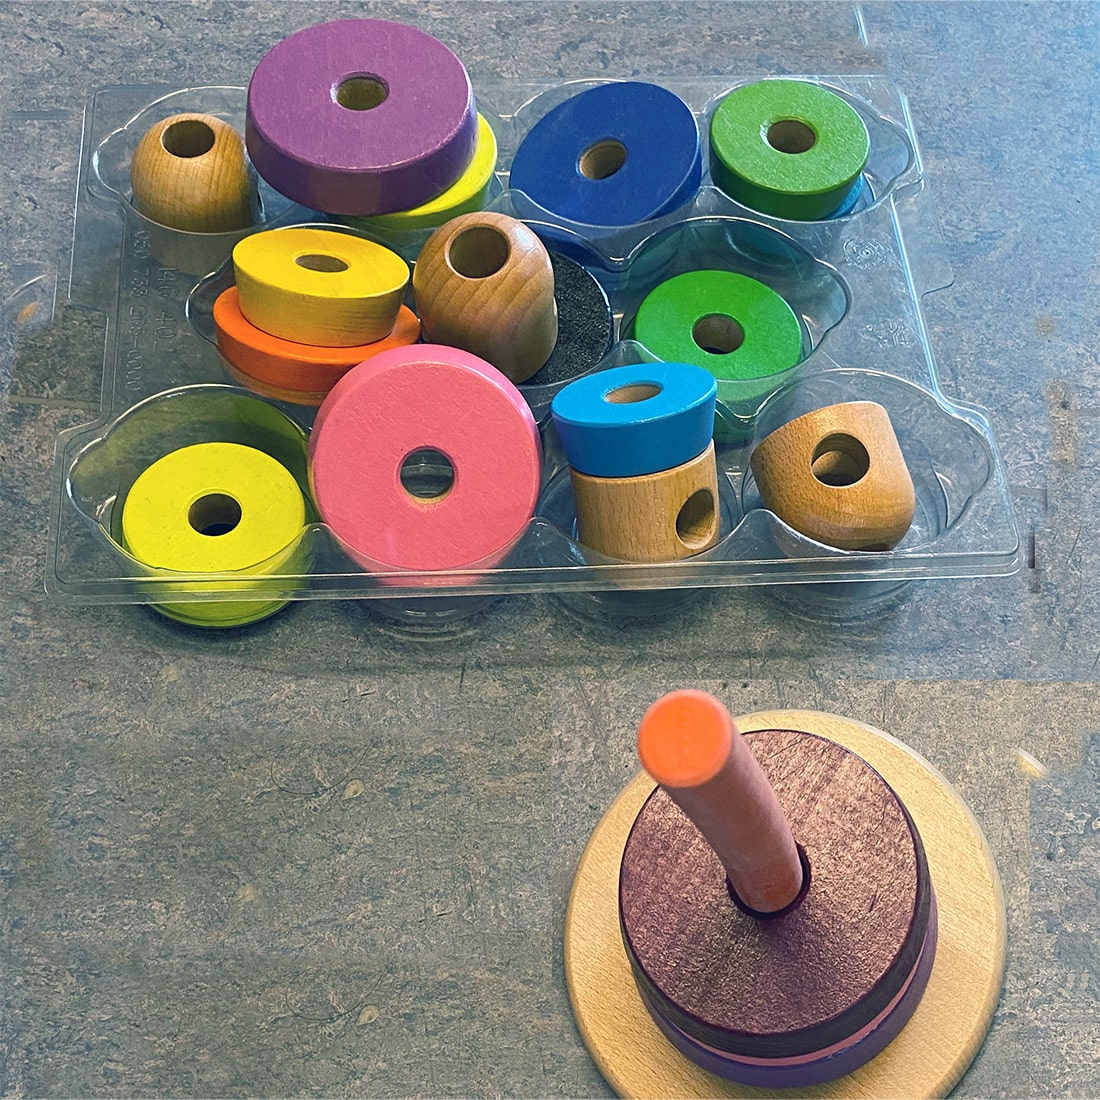 Ein Stapelspielzeug aus Holz mit bunten, abgerundeten Teilen neben seiner Kunststoffverpackung auf einer Tischplatte.